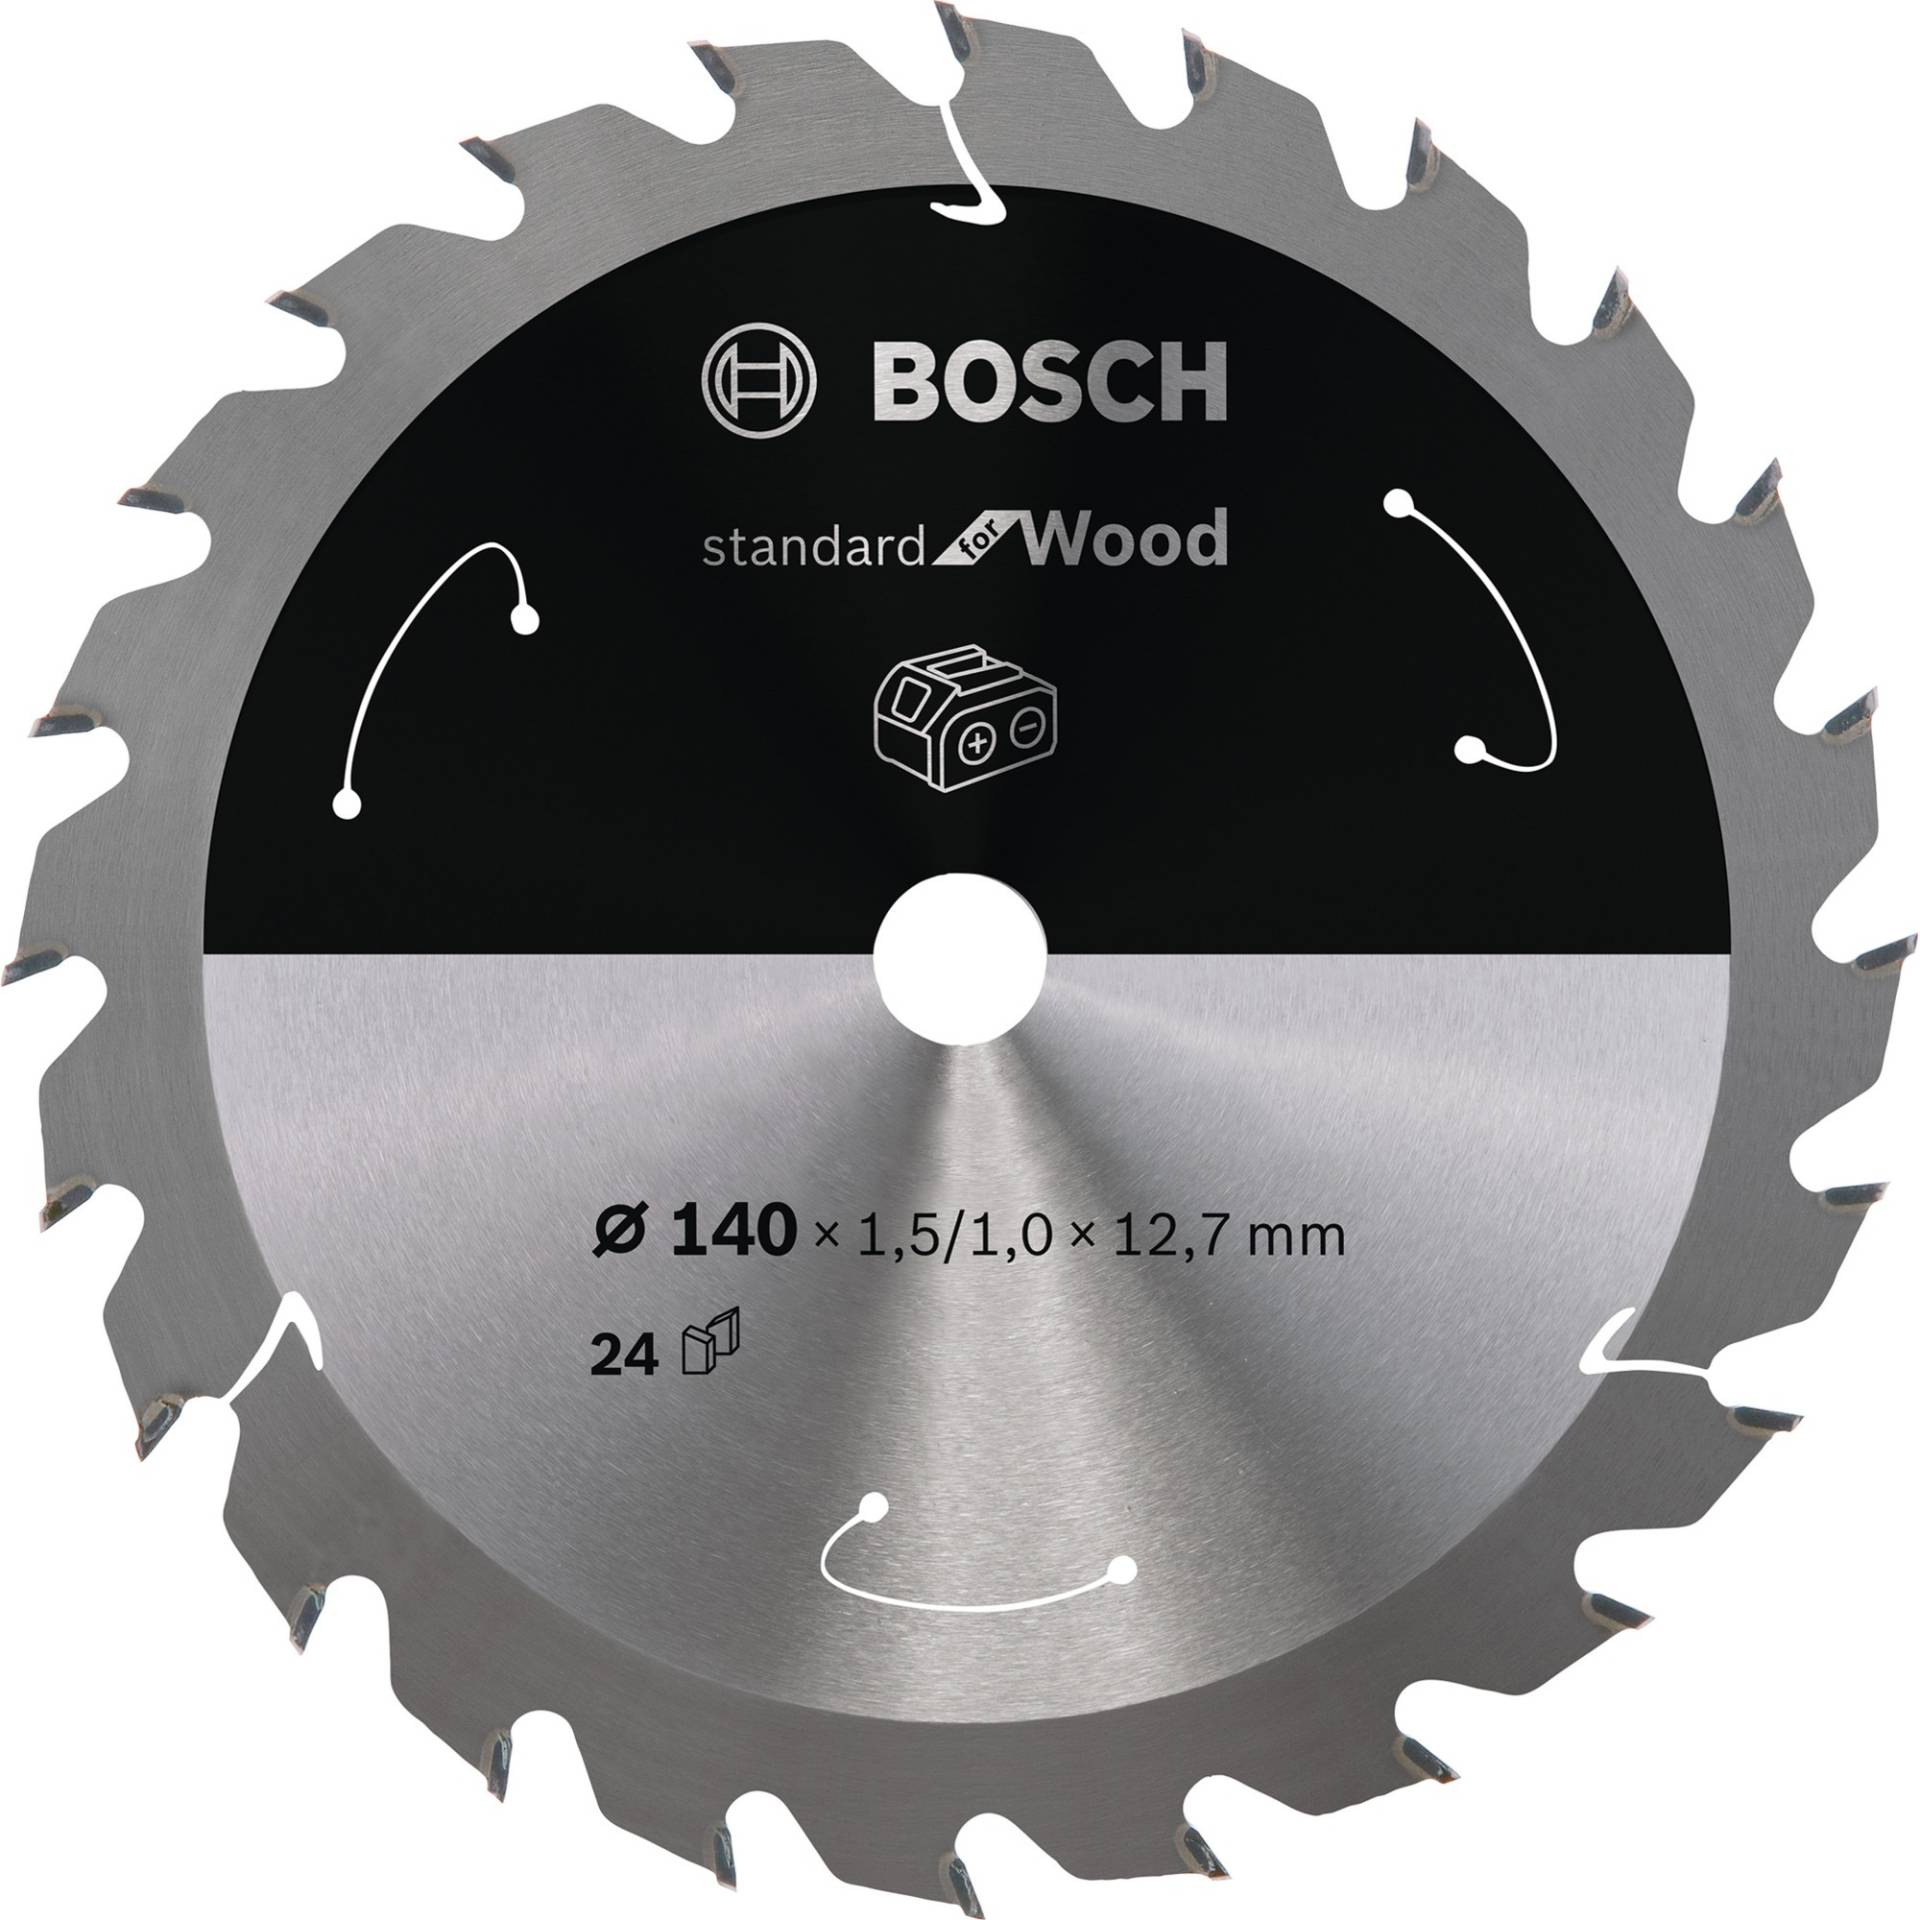 Kreissägeblatt Standard for Wood, Ø 140mm, 24Z von Bosch